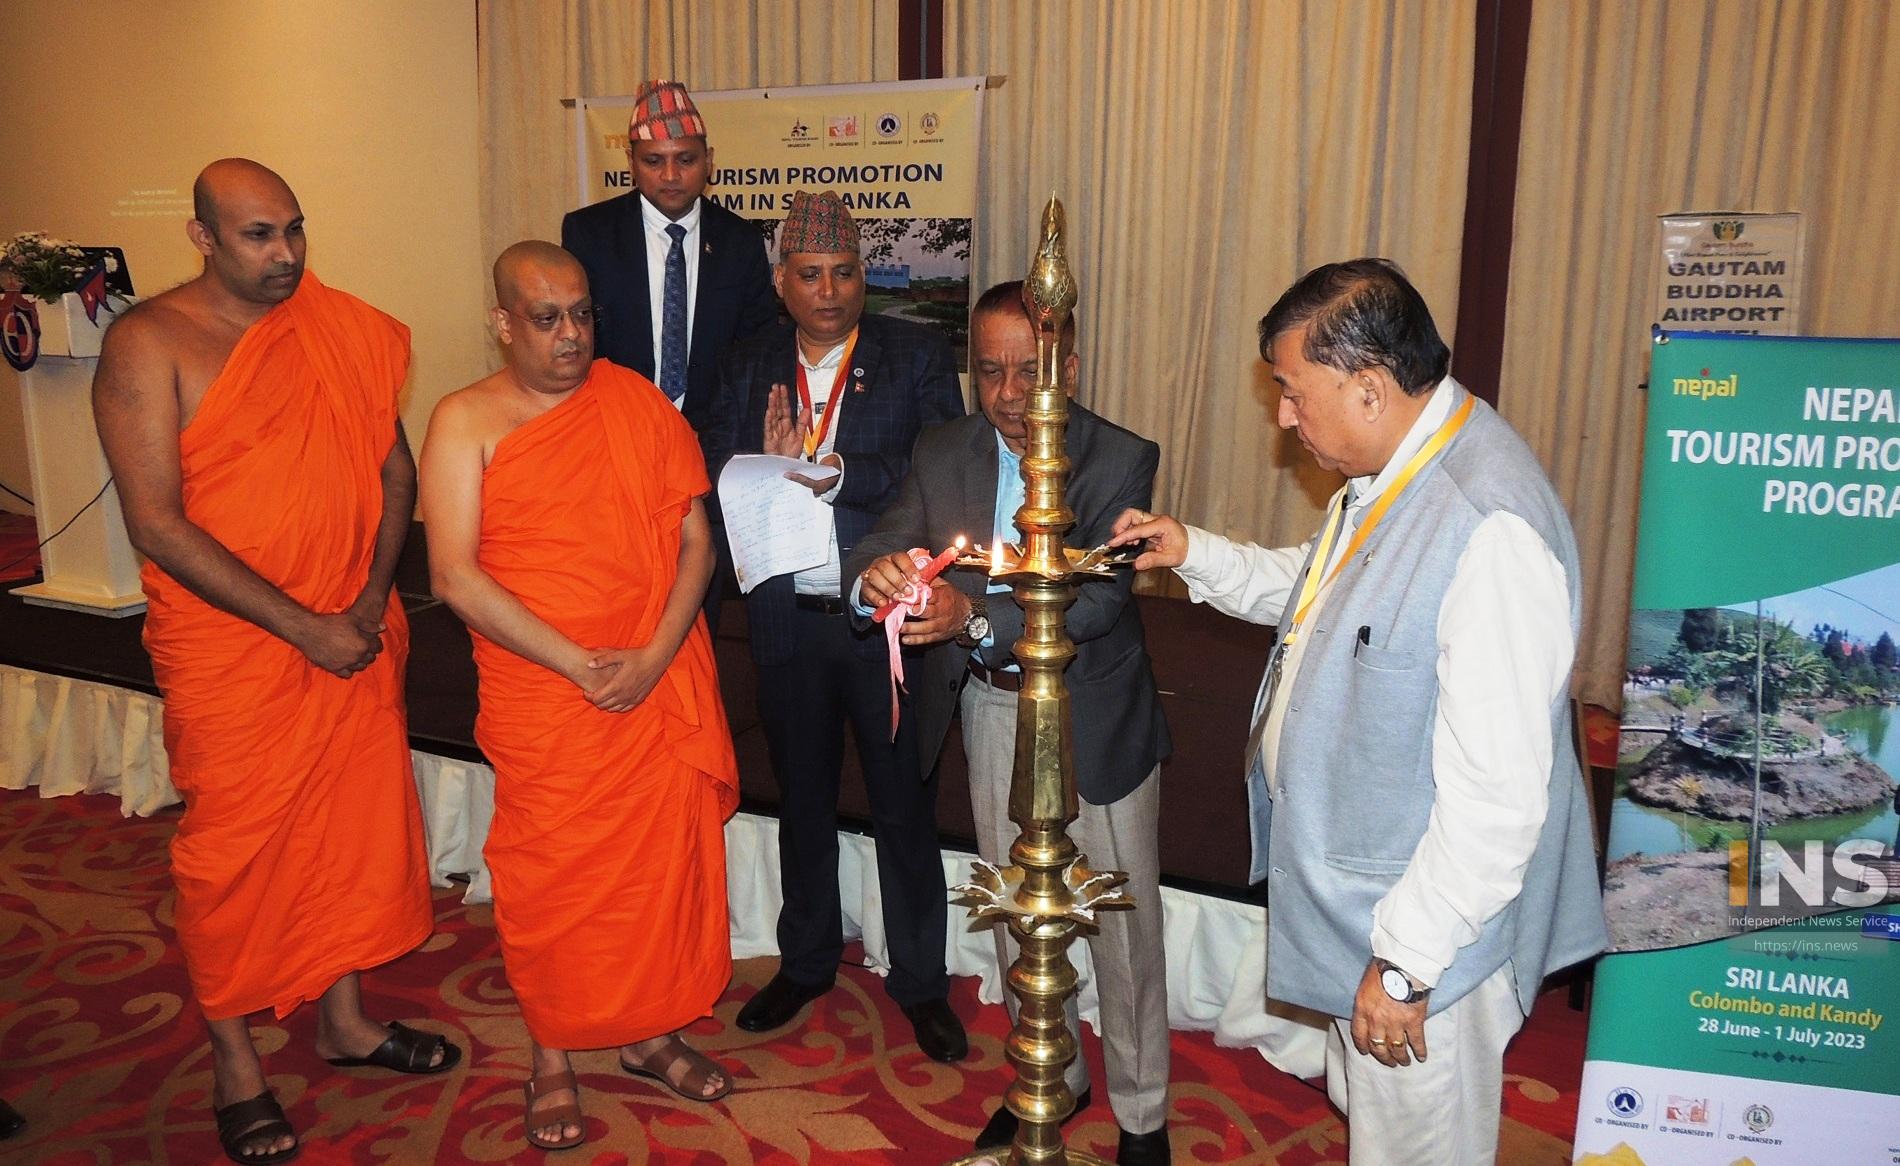 श्रीलंकाको क्यान्डीमा नेपाल प्रवर्द्धन कार्यक्रम, लुम्बिनीबाट बौद्धस्थलको भ्रमण सुरु गर्न आग्रह